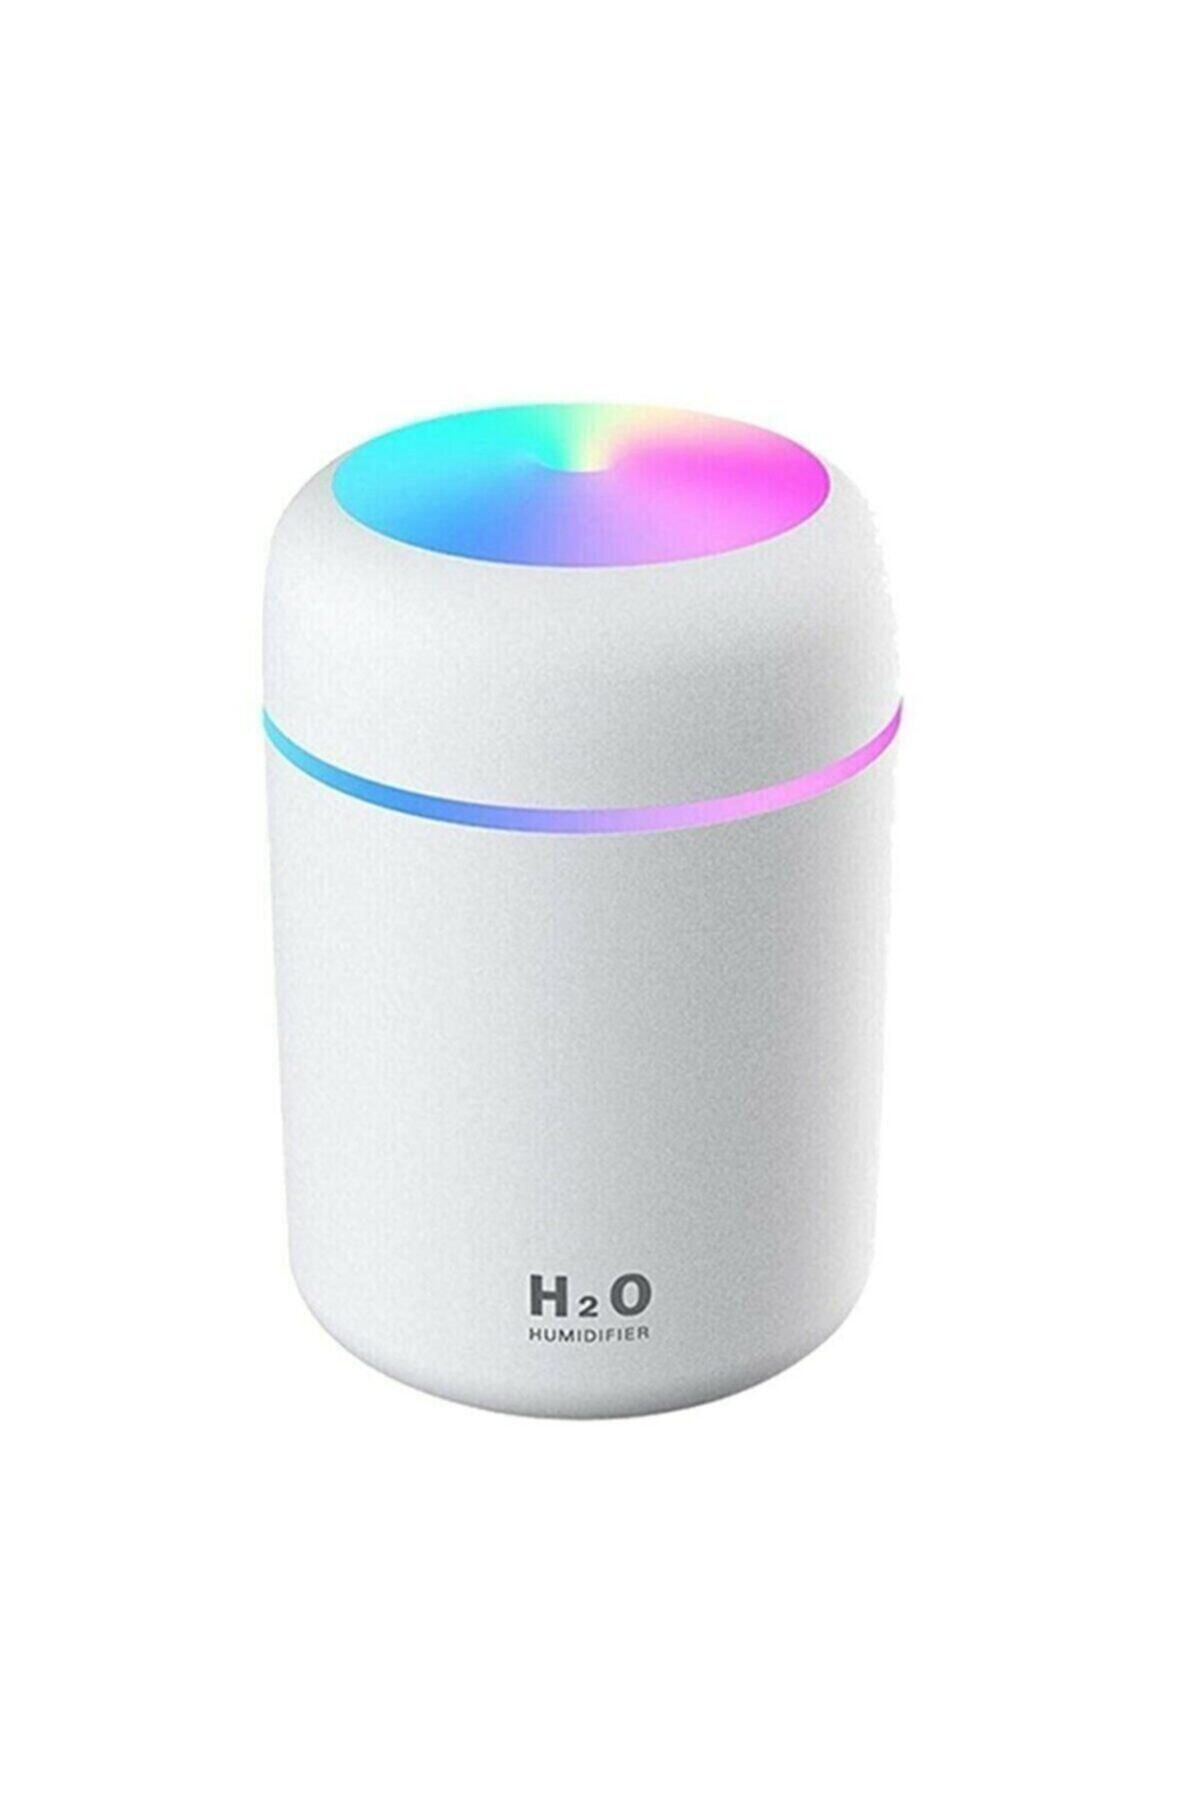 H2O Humidifier H2o 300 Ml Ulrasonik Hava Nemlendirici Ve Aroma Difüzörü 4507